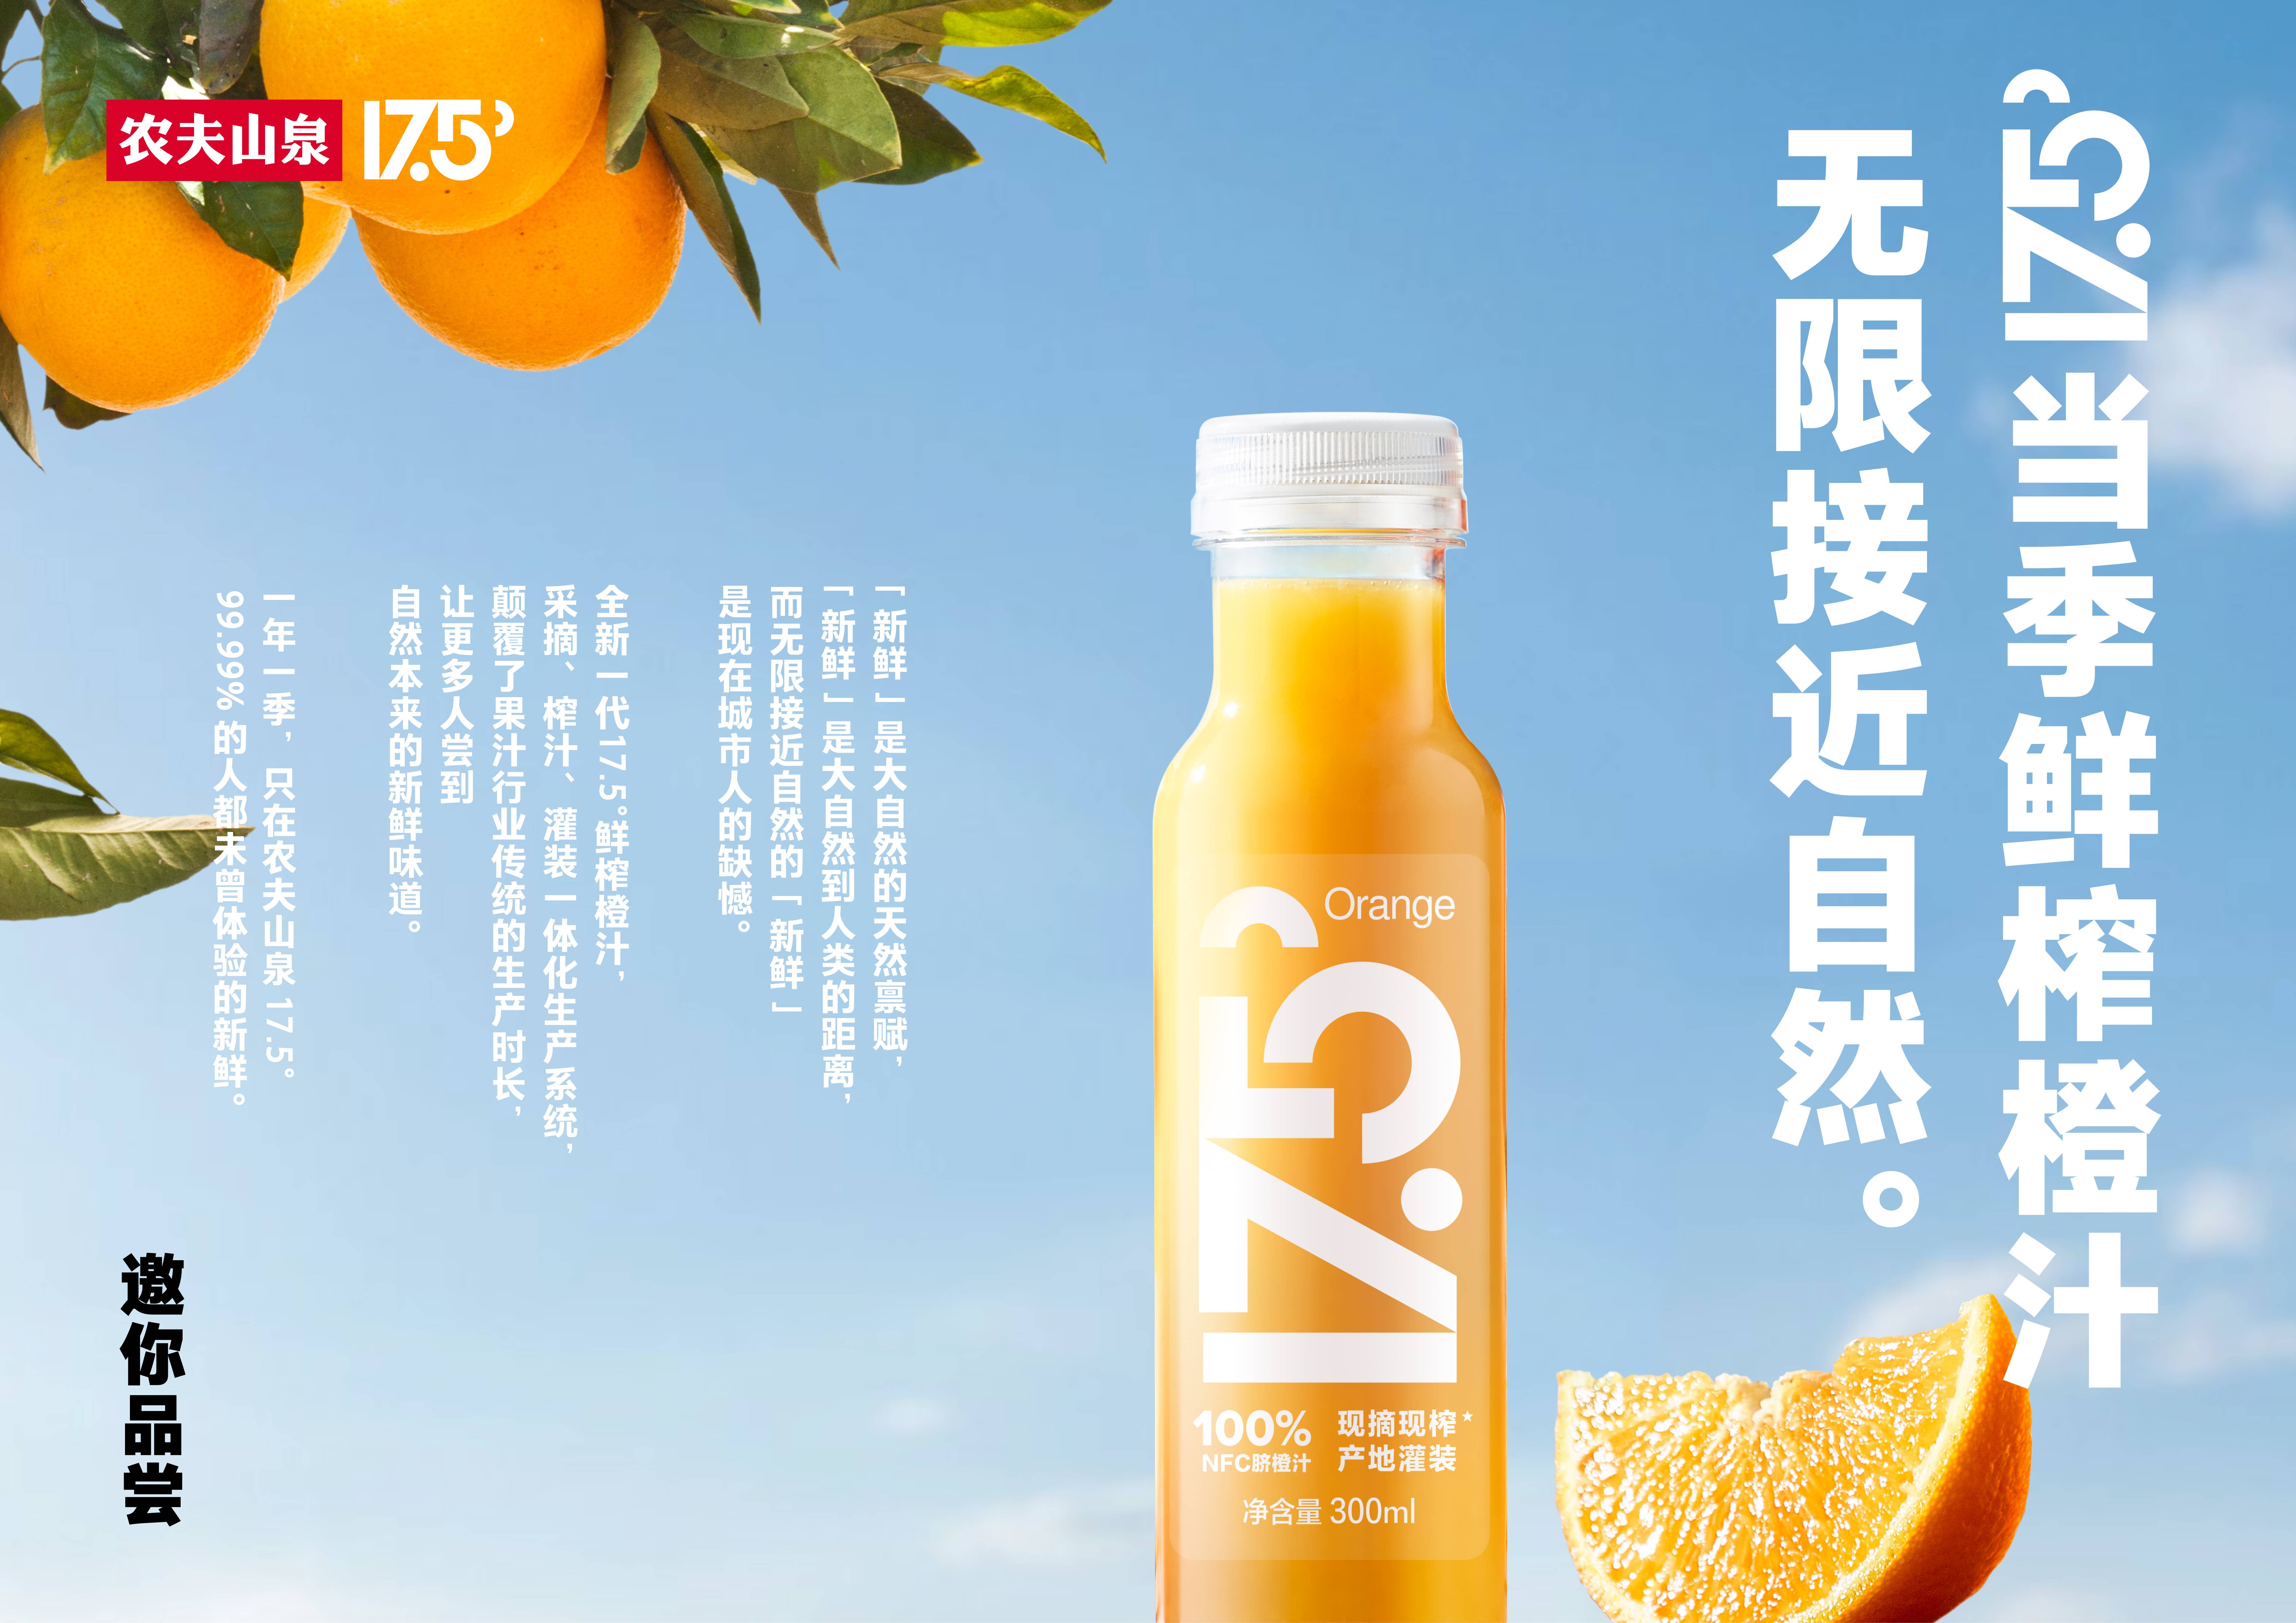 新鲜是人类和自然的距离农夫山泉推出当季鲜榨橙汁175挑战味觉极限